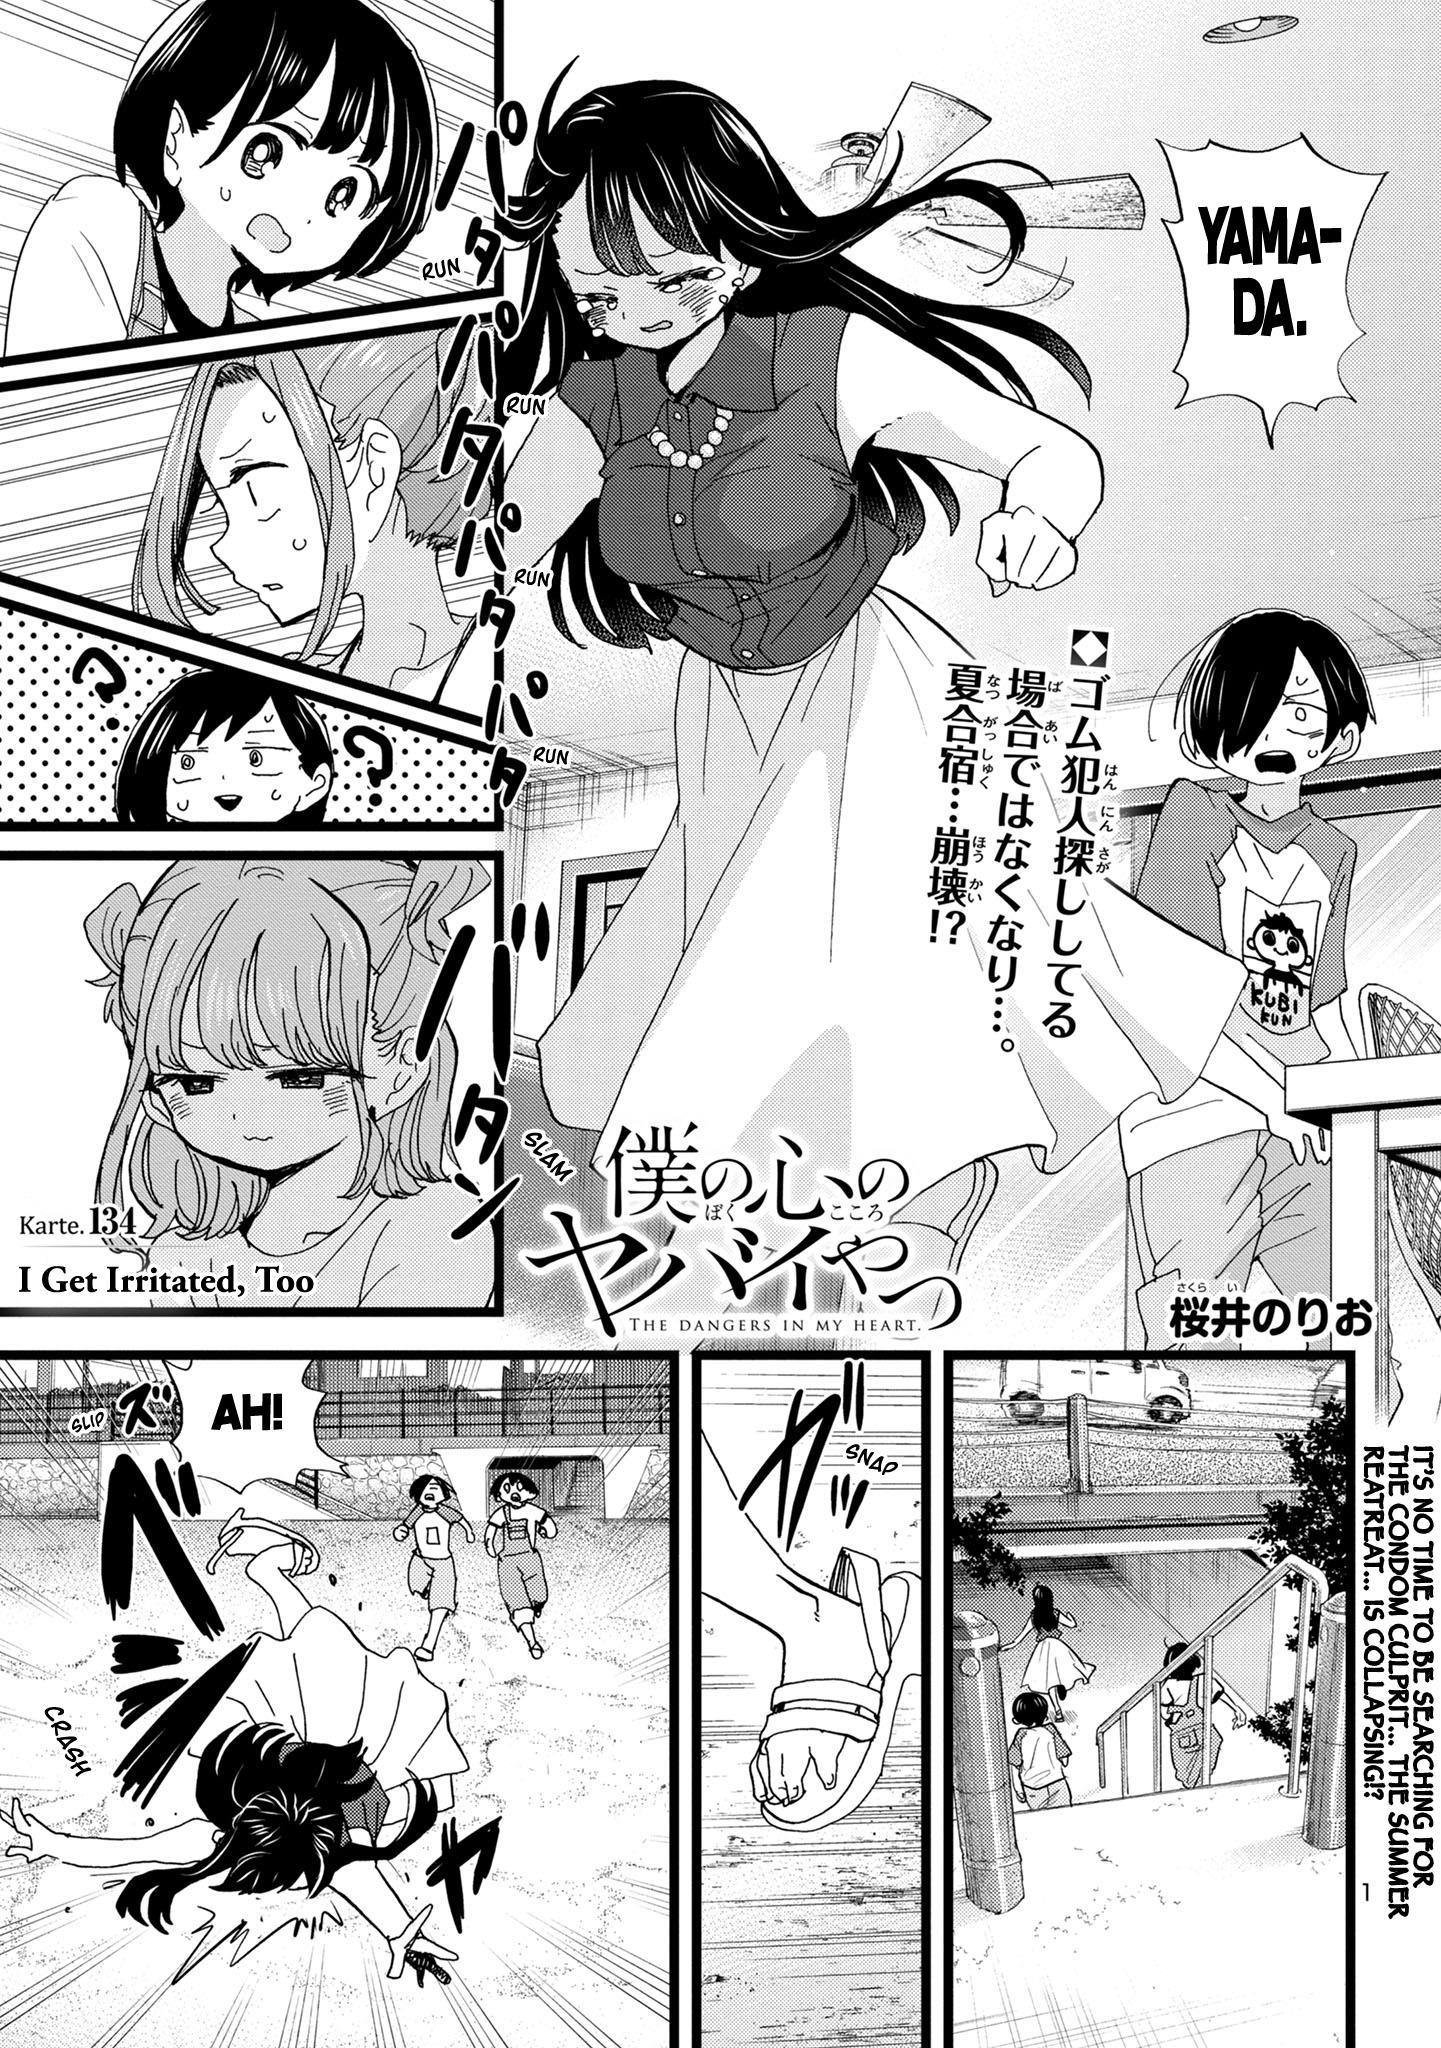 Read Boku No Kokoro No Yabai Yatsu Vol.10 Chapter 134: I Get Irritated, Too  on Mangakakalot